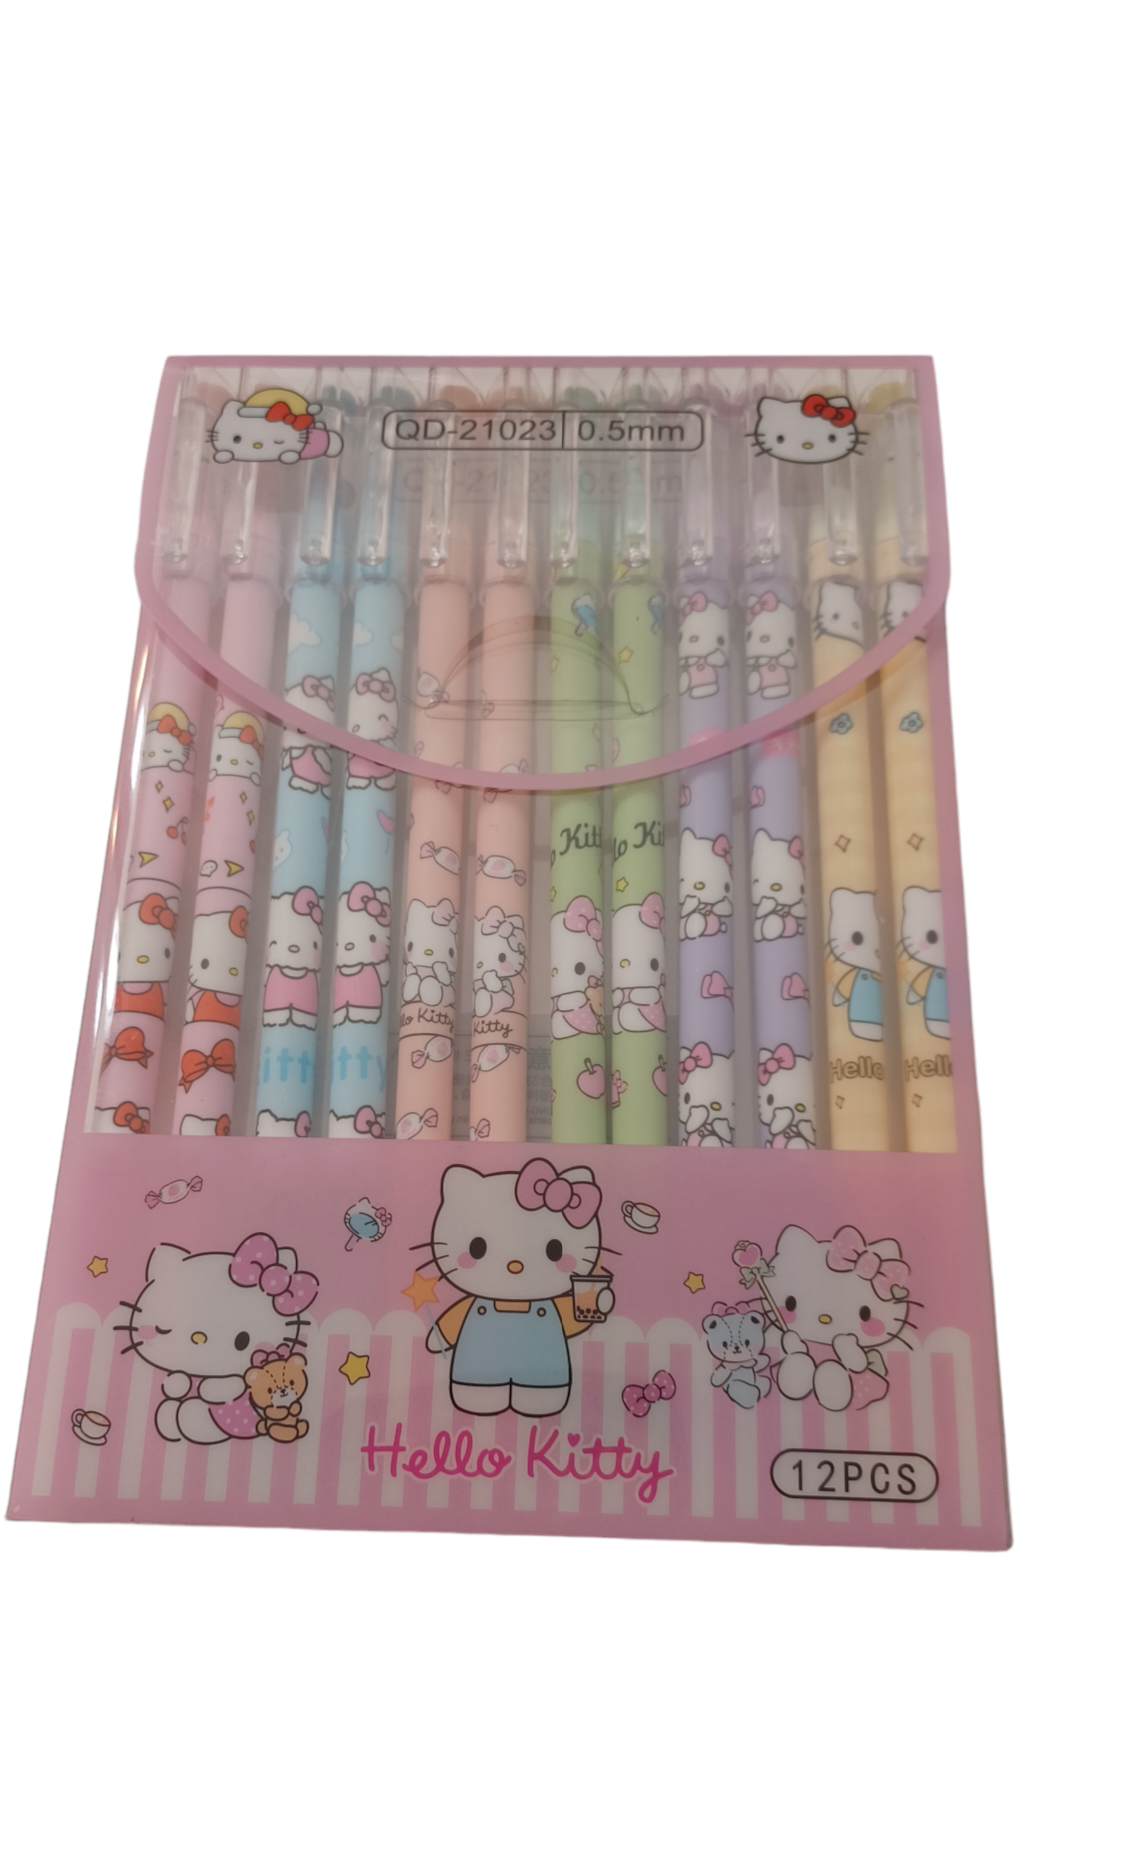 Kawaii Eraser Pen Package of 12pcs